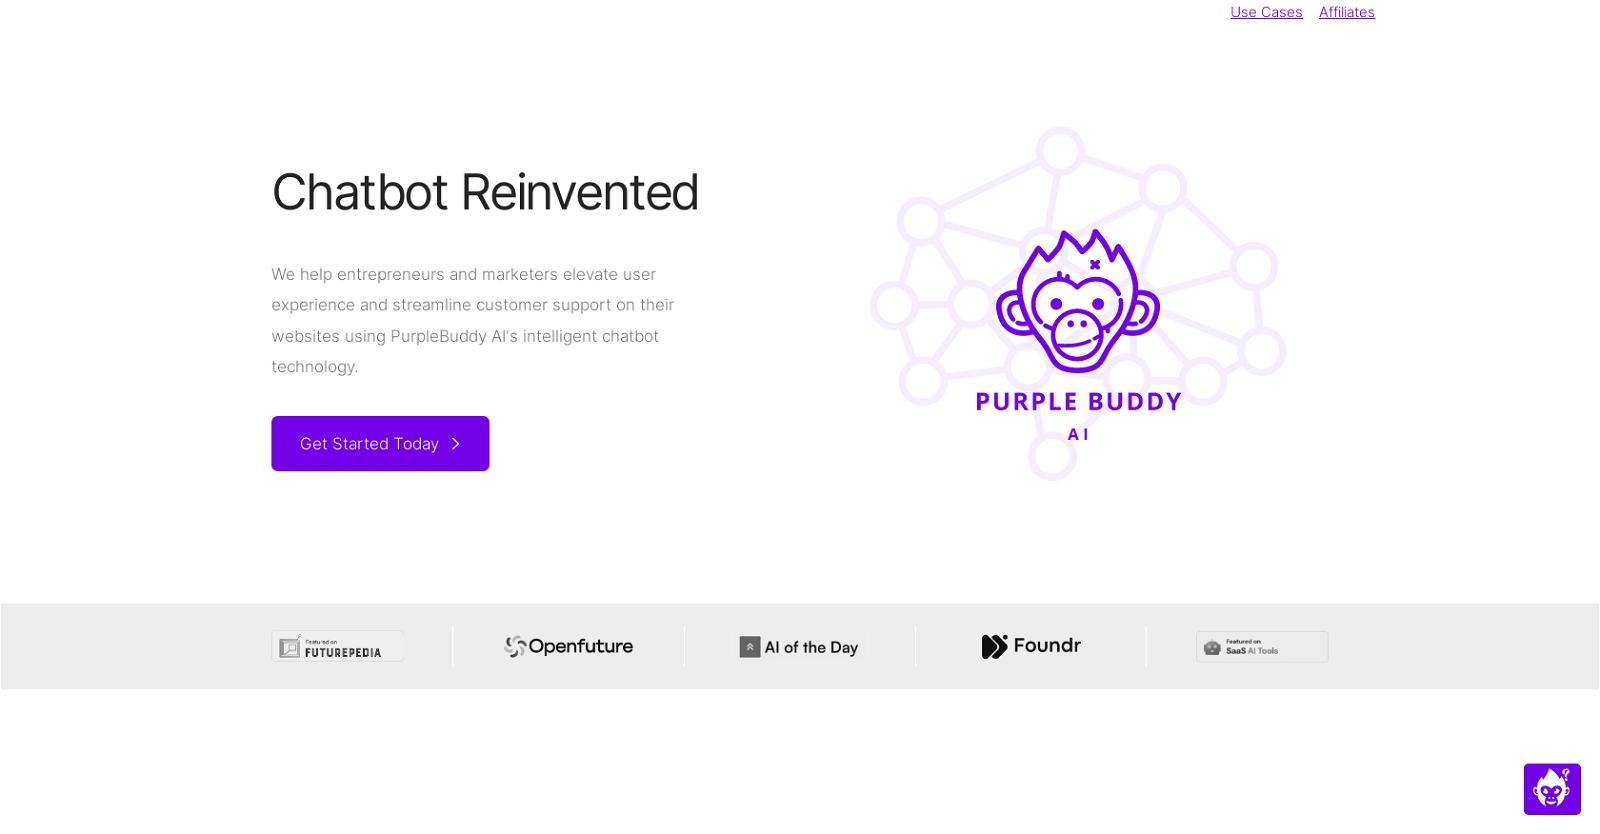 PurpleBuddy